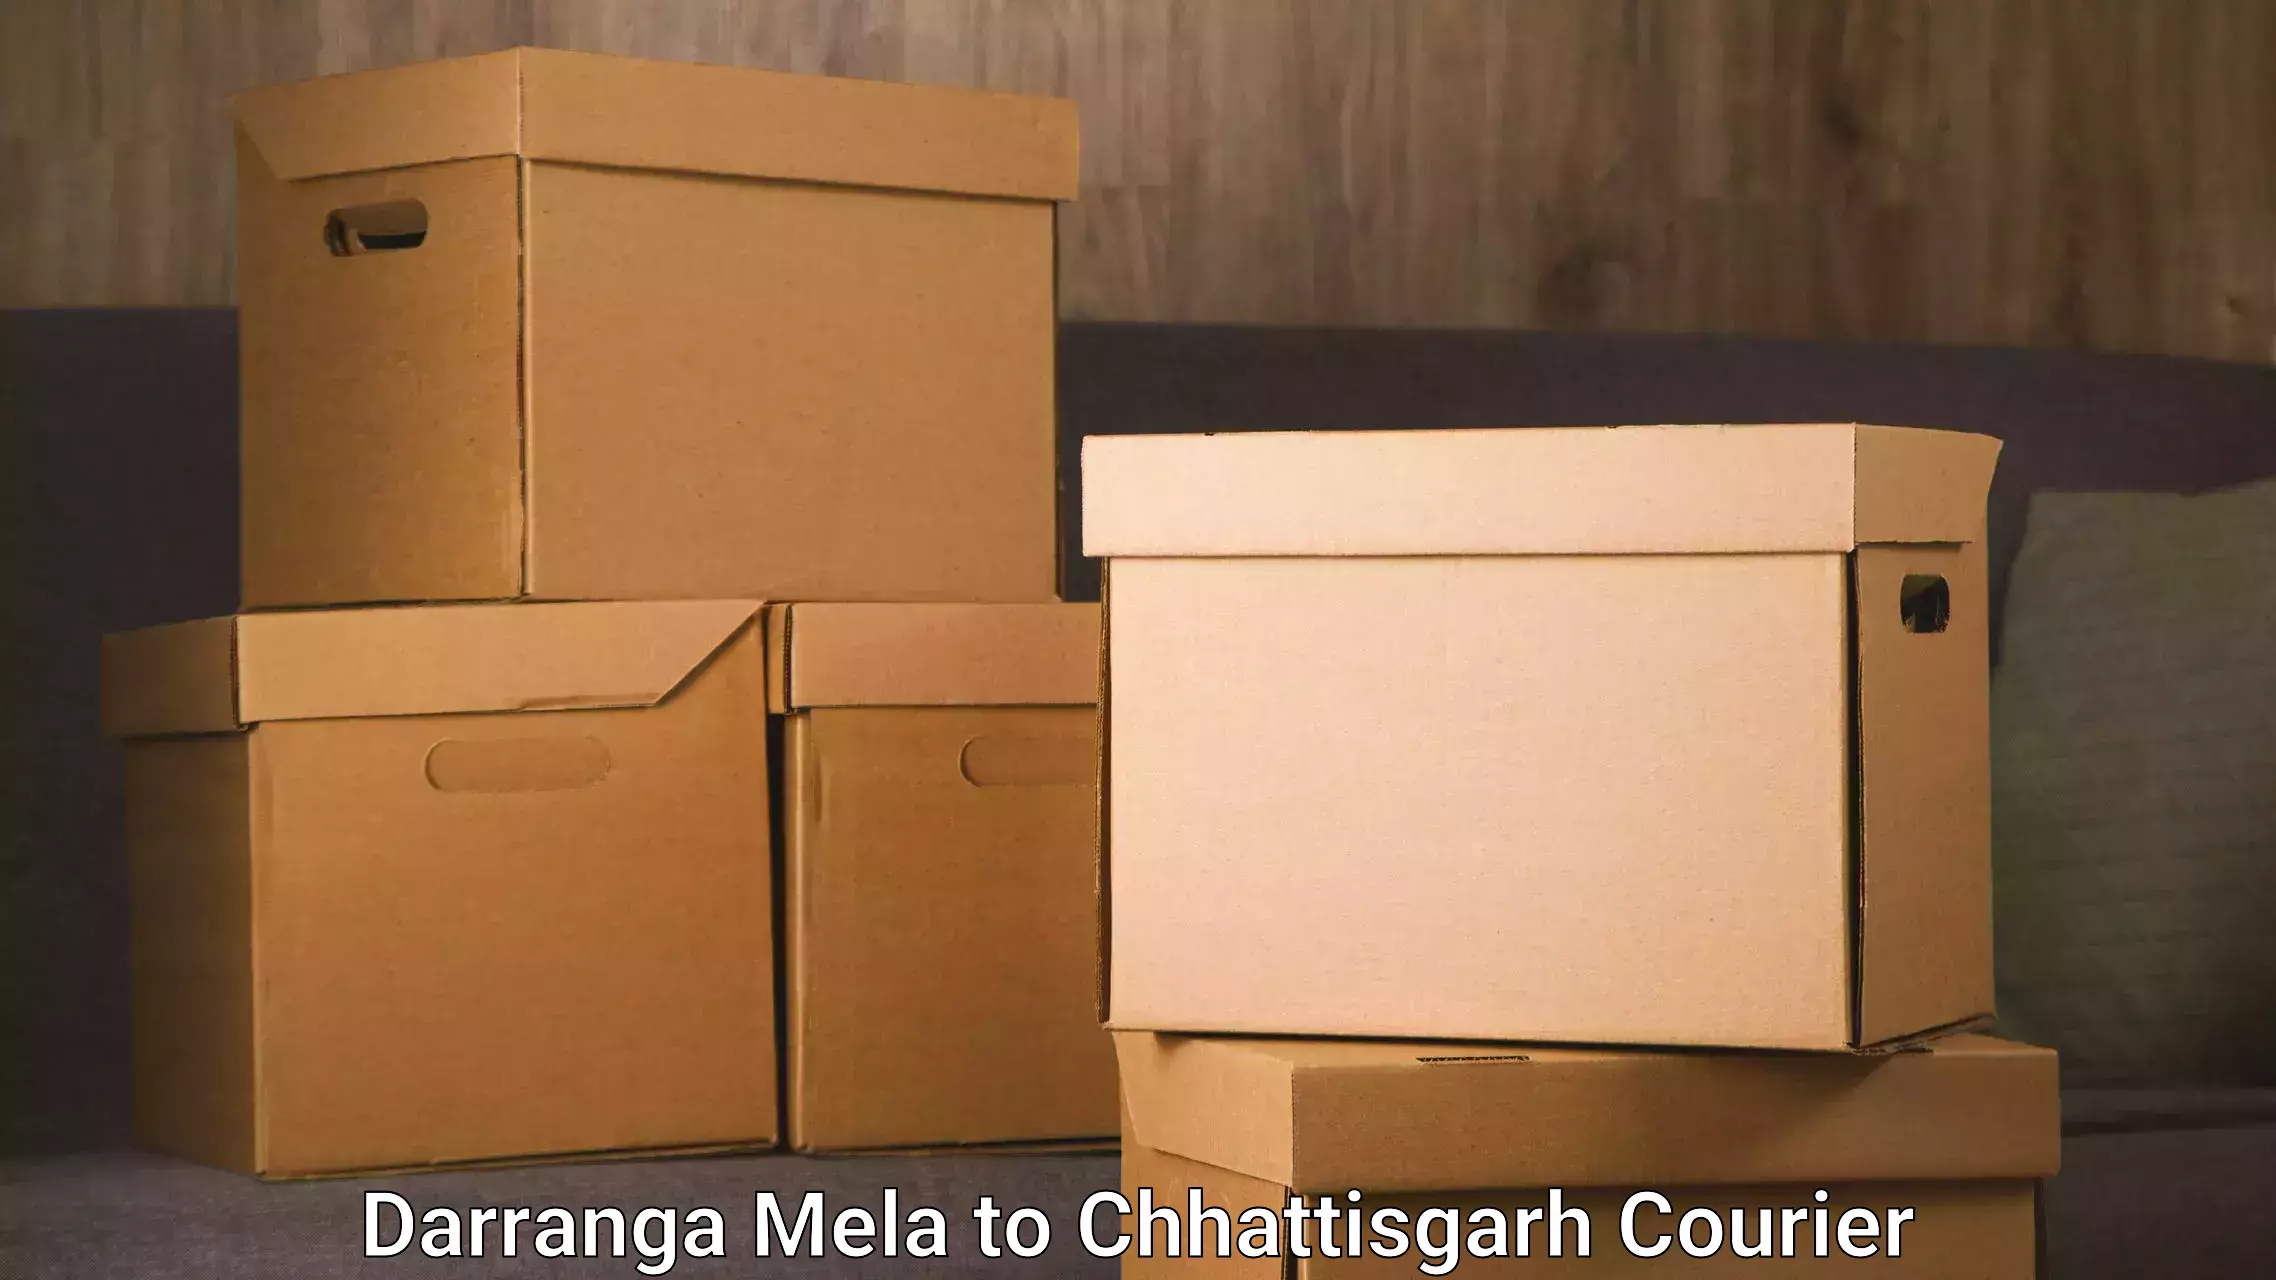 Efficient courier operations Darranga Mela to Bilaspur